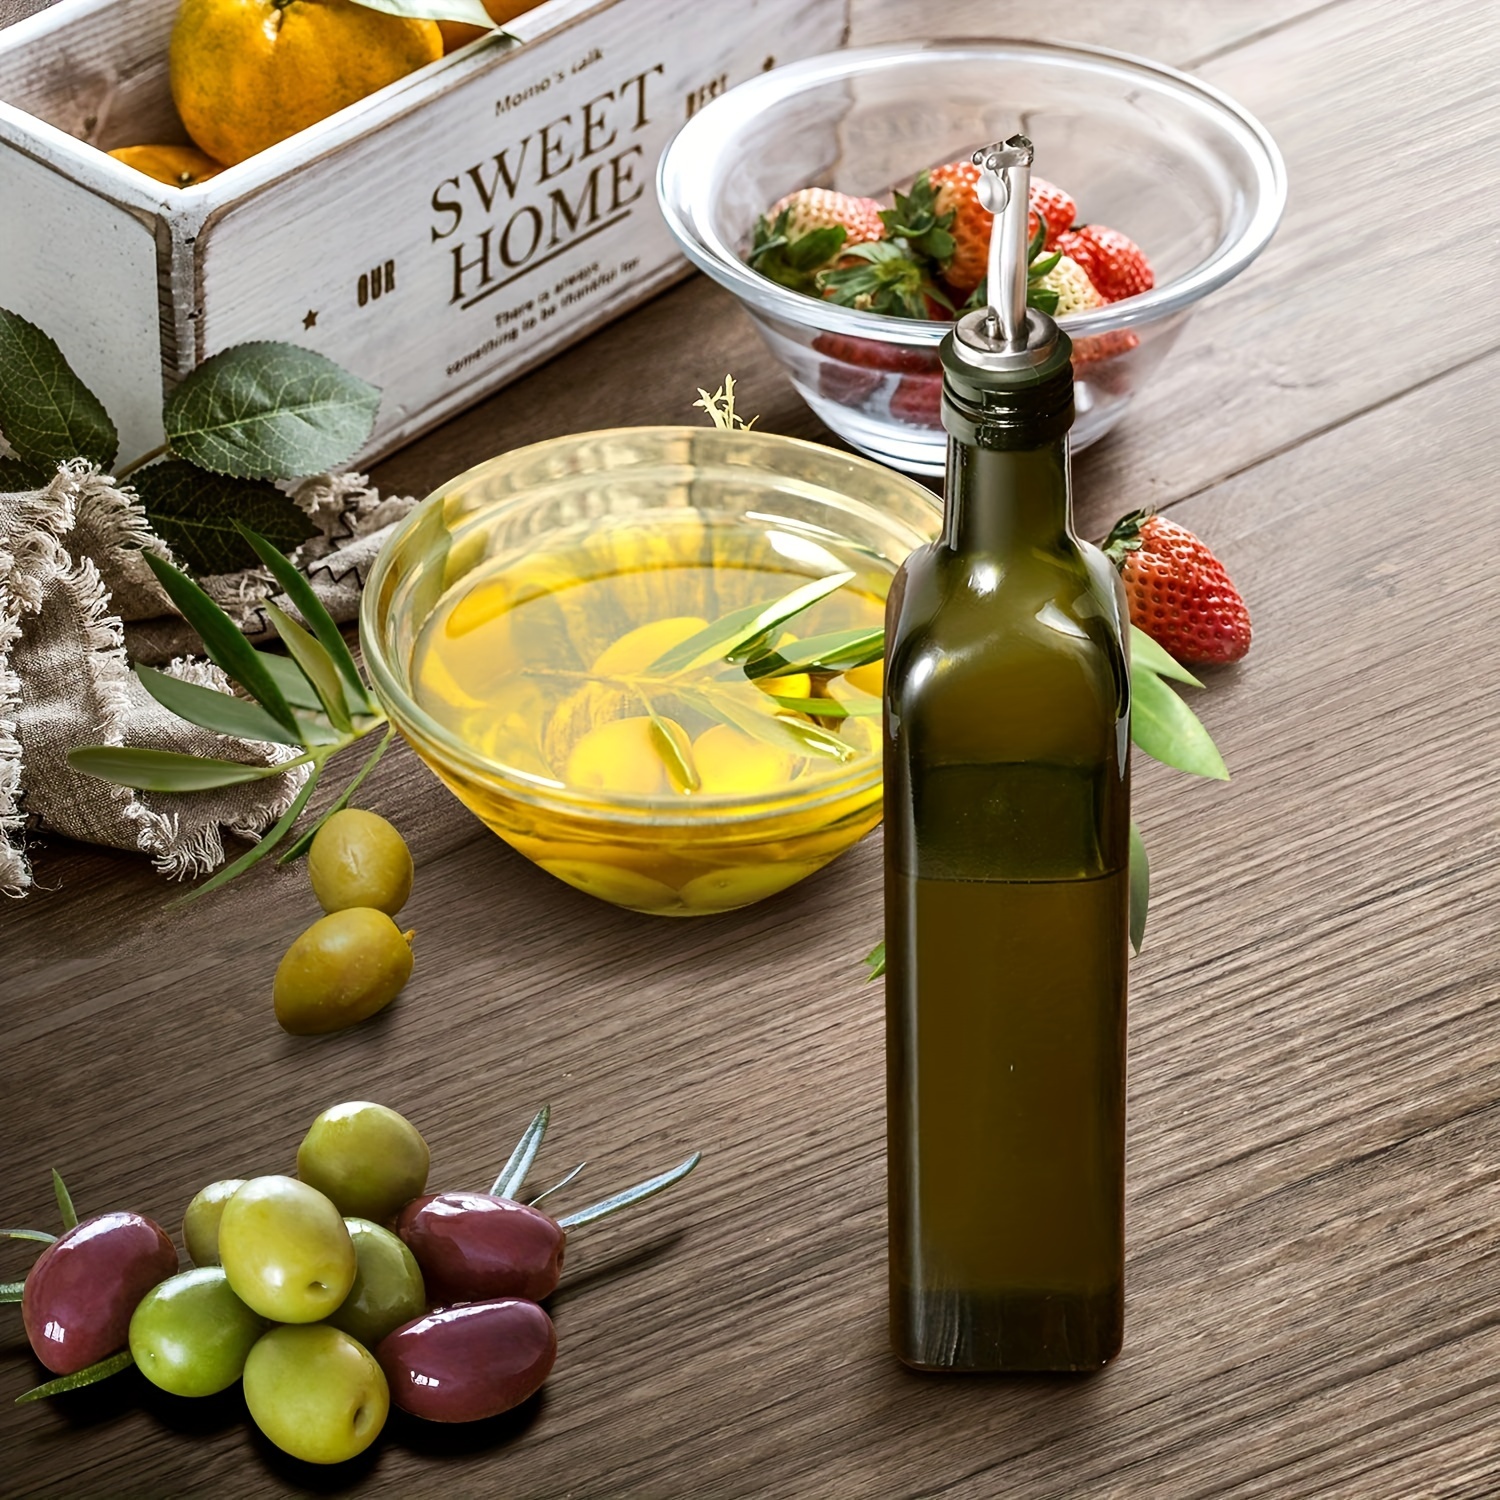 Distributeur d'huile d'olive & sauces — Ma lunchbox shop